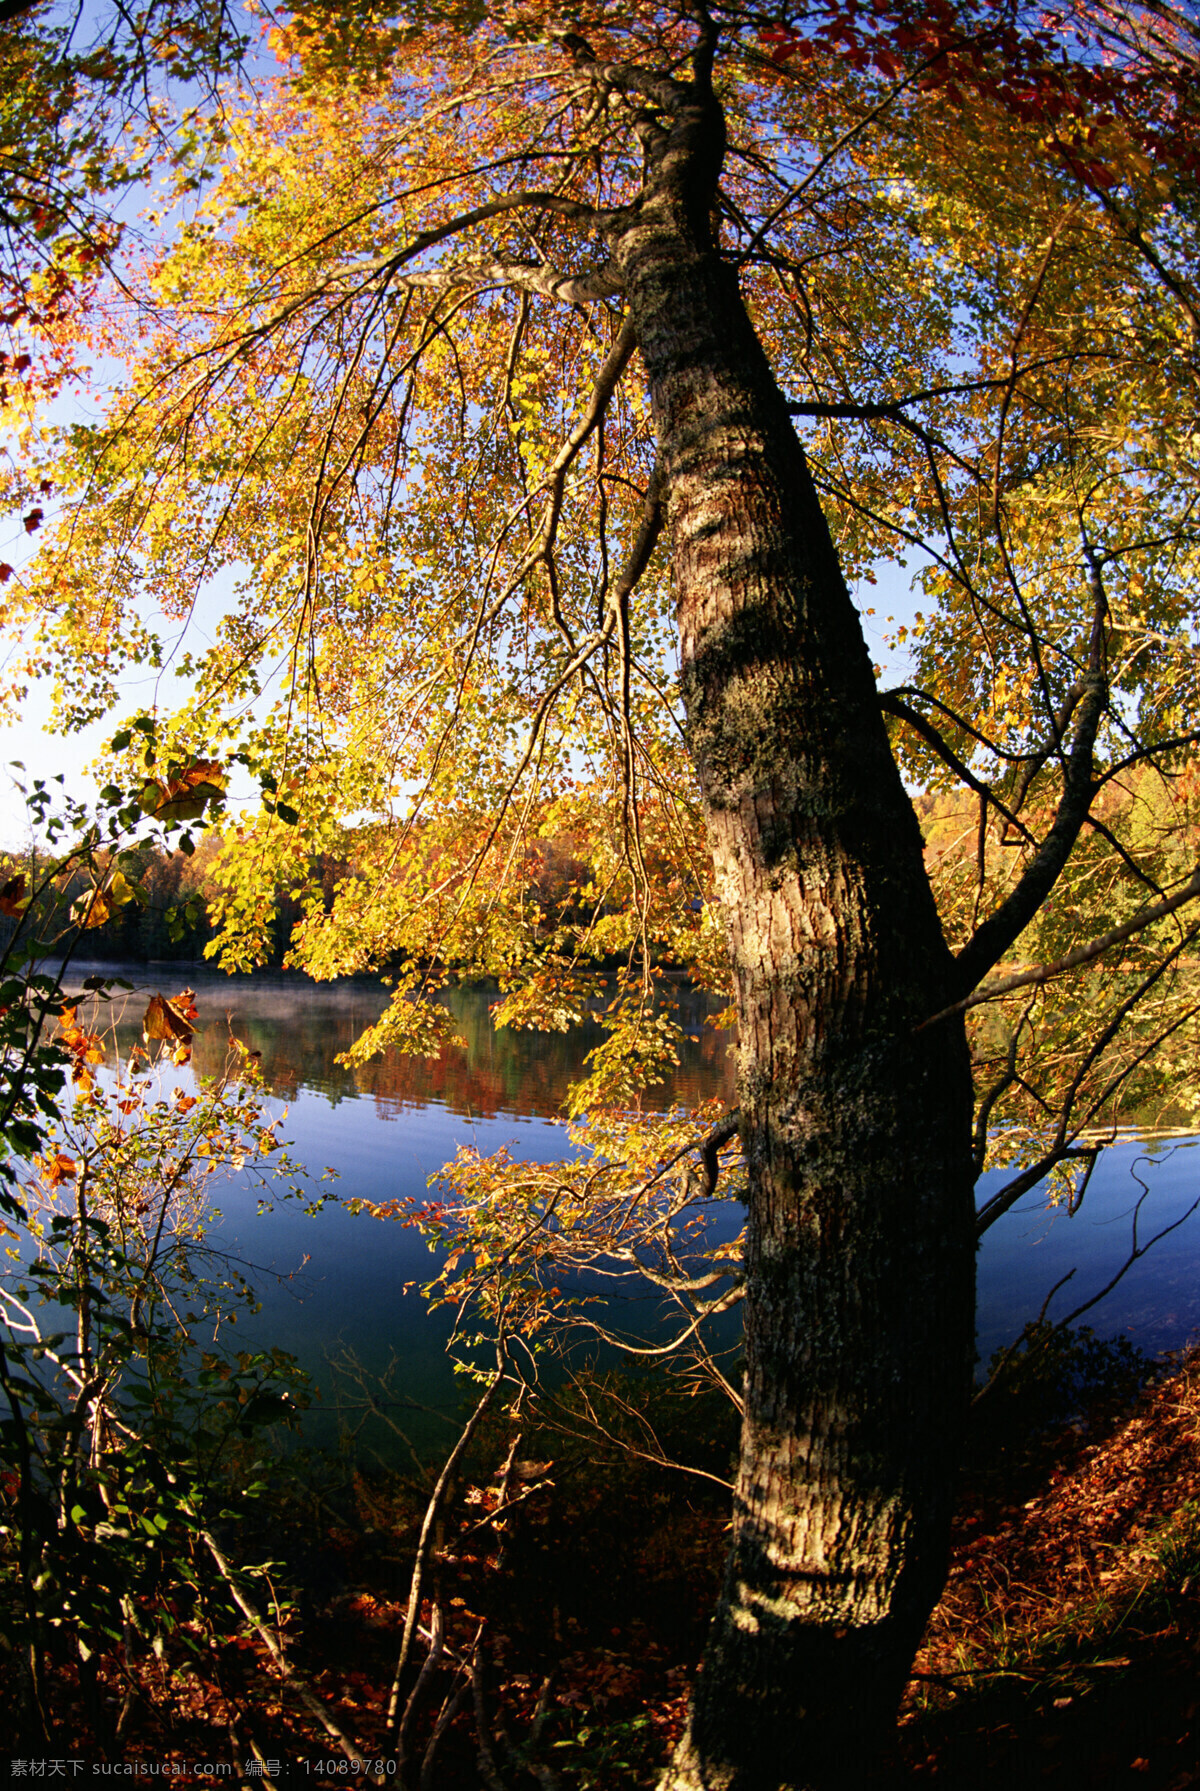 秋天 背景图片 秋天风景 秋景 秋天色彩 机叶 叶子 树木 生态环境 野外 自然 自然生态 植物 户外 清新 自然风景 自然景观 湖泊 倒影 花草树木 生物世界